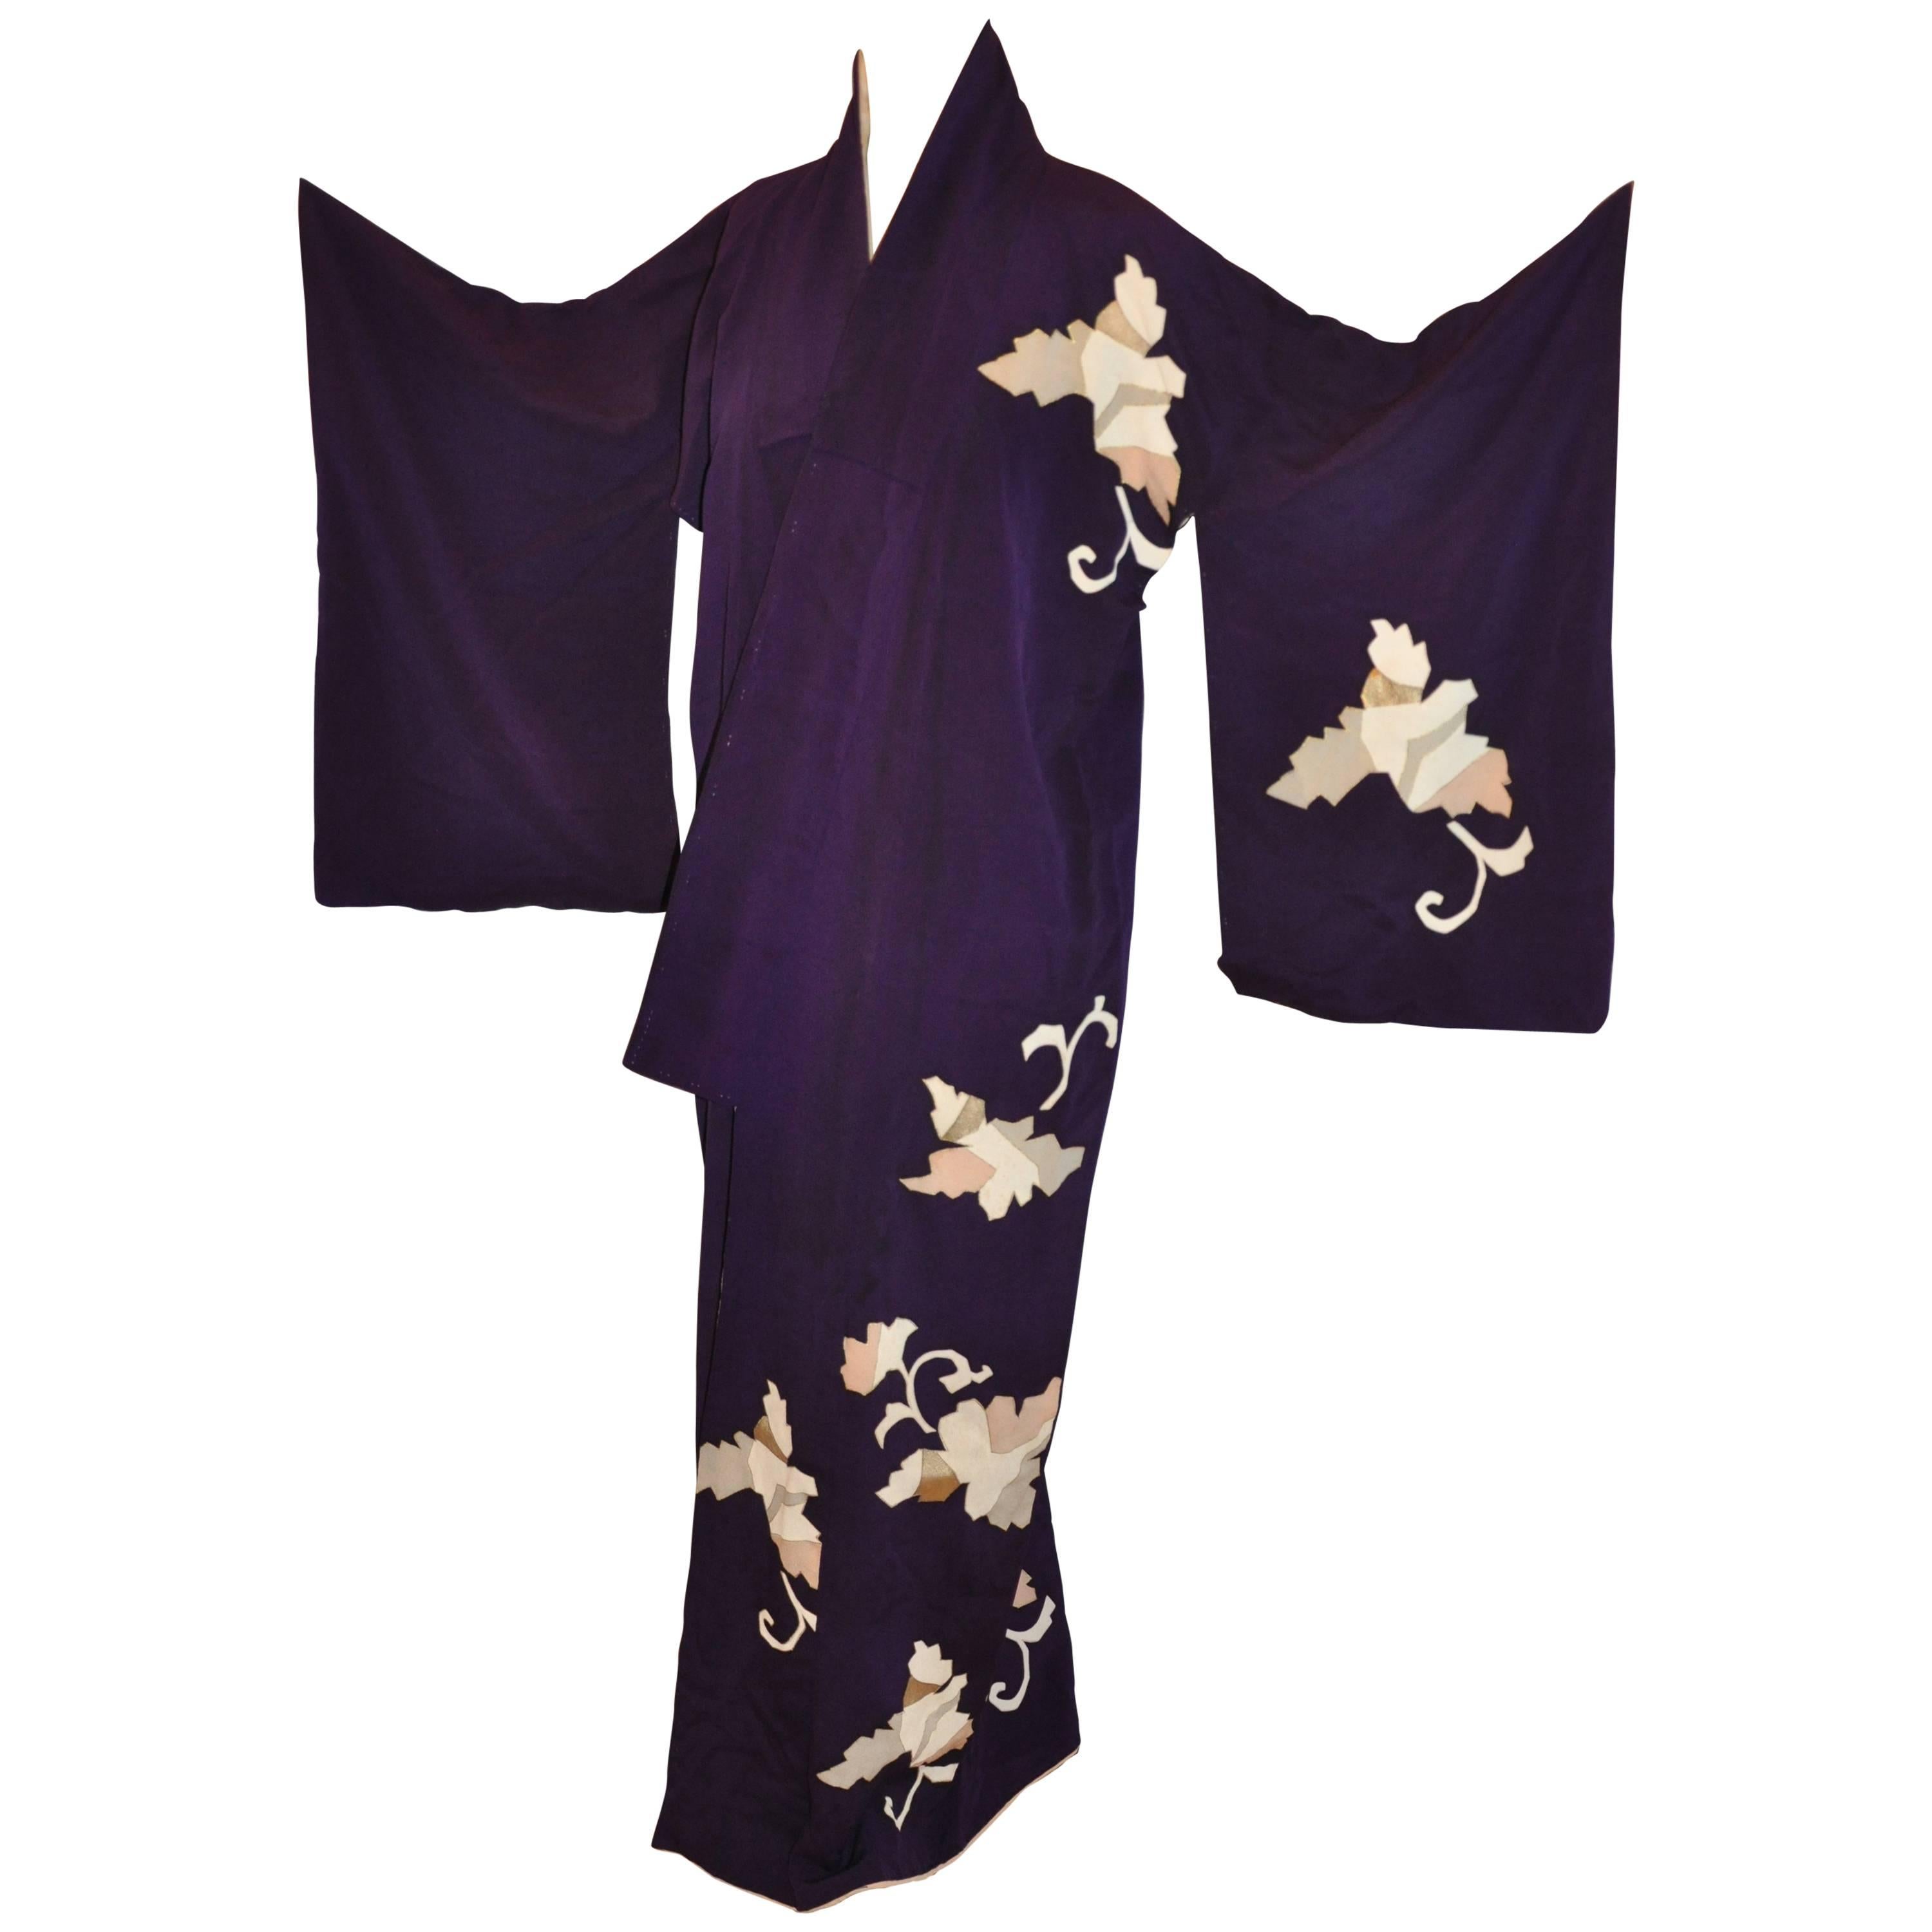 Kimono japonais en soie prune foncée orné de fleurs géométriques